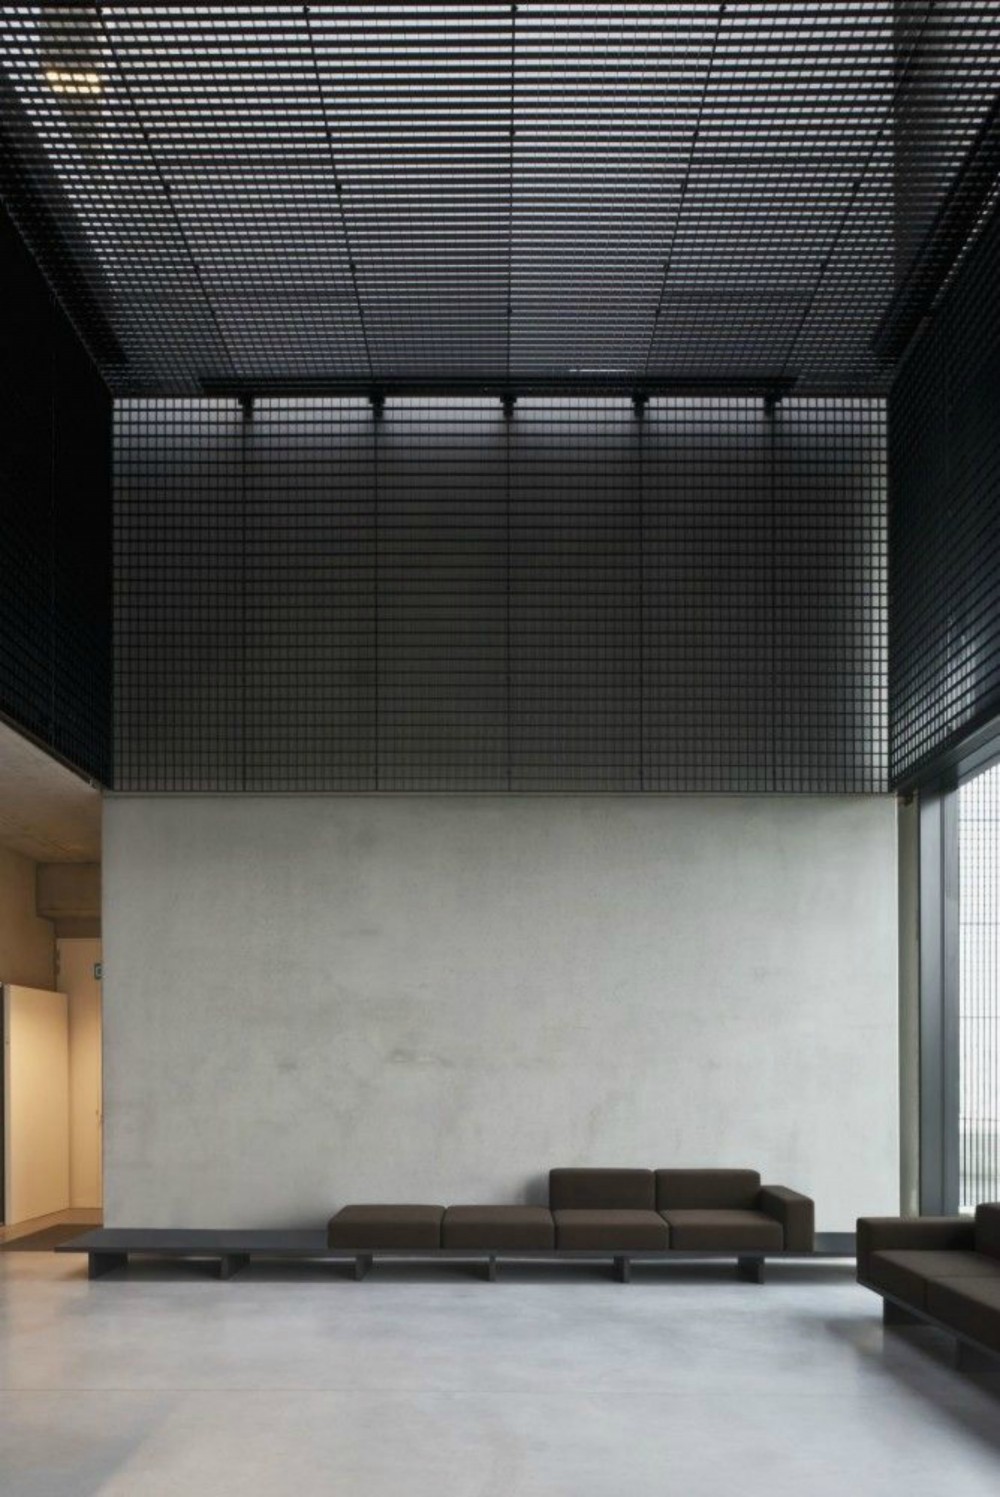 Rejillas metálicas en Oficinas Tonickx / Vincent van Duysen Arquitectos